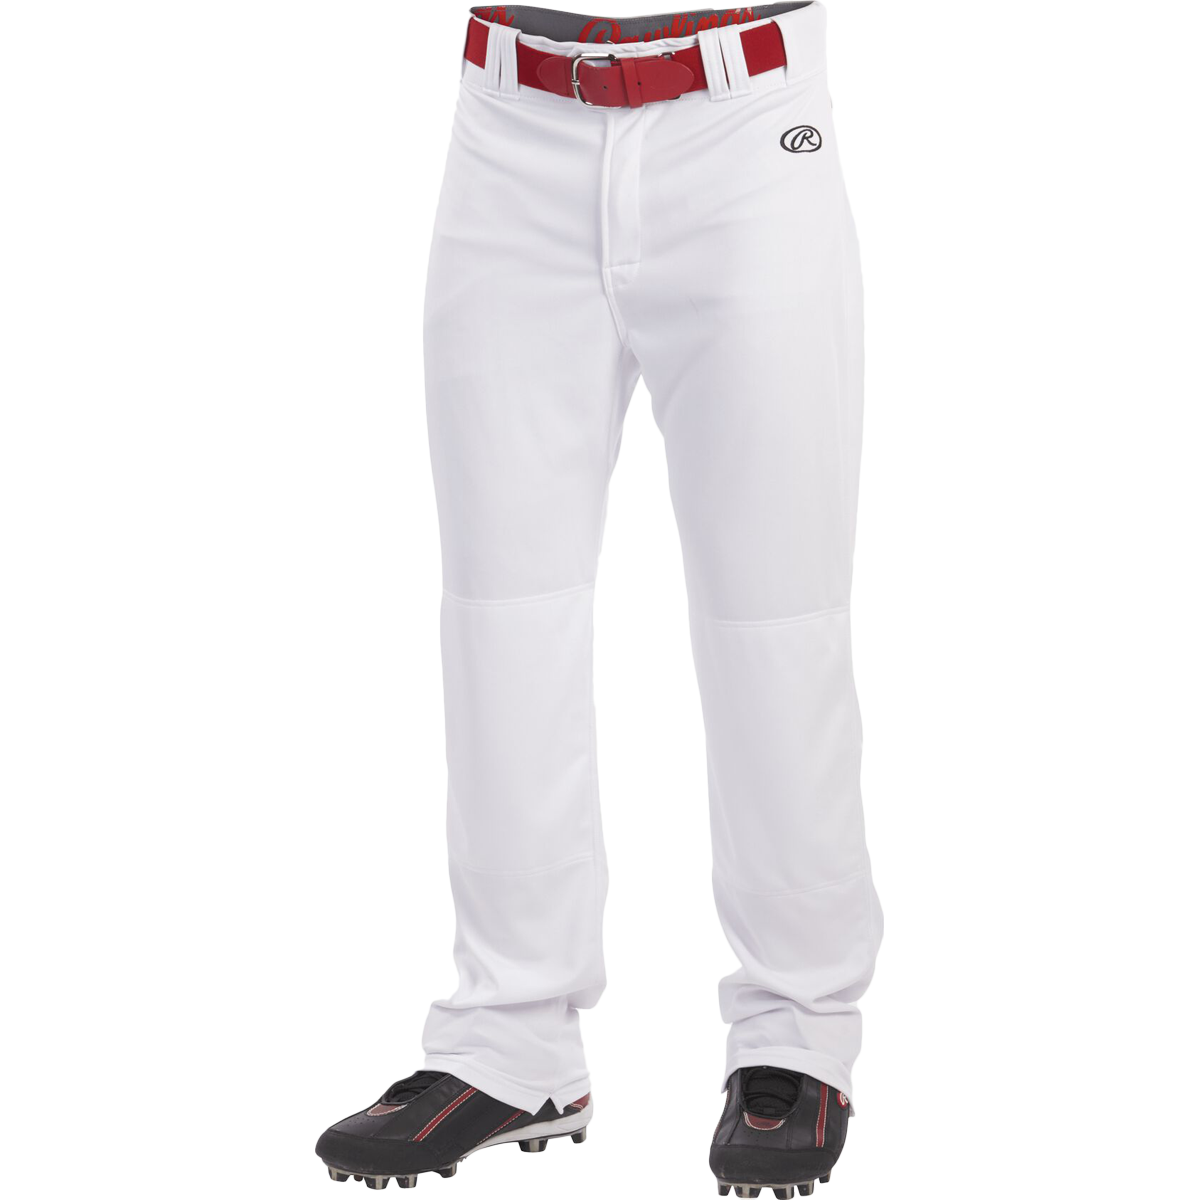 Baseball Pants-White - JayMac Sports Products